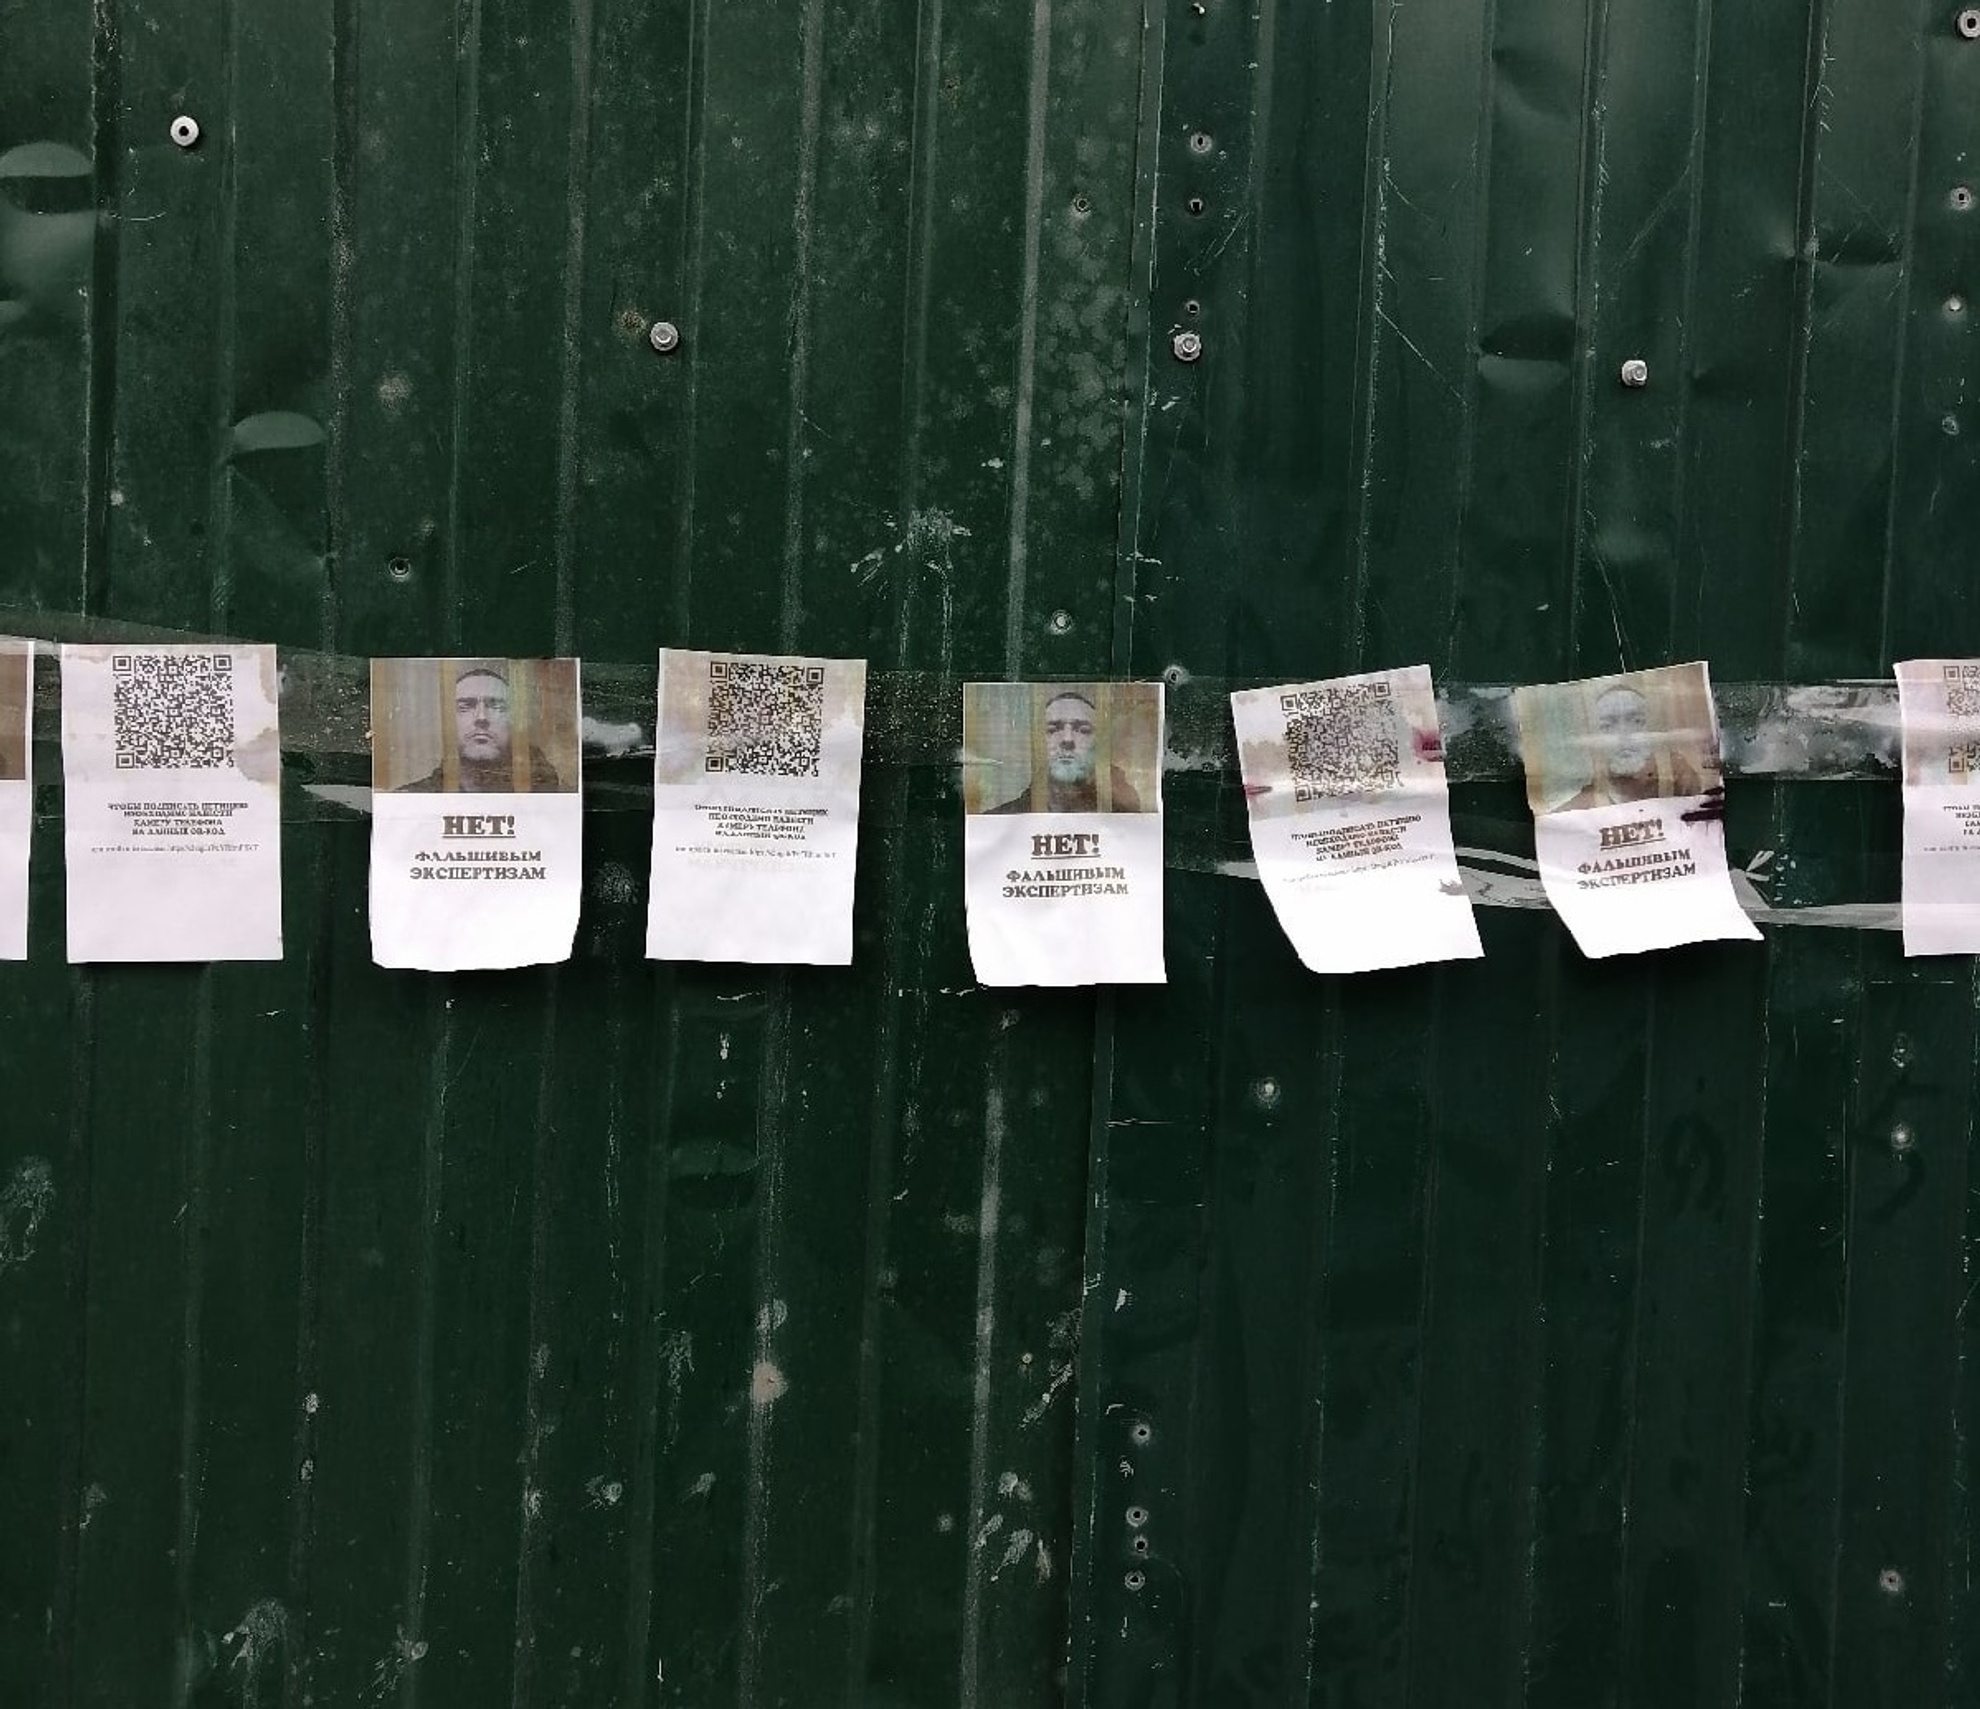 В конце июня прошлого года на улицах появились листовки в поддержку Виталия Бережного. В объявлениях написано большими буквами: «Нет фальшивым экспертизам» и напечатан QR-код, который ведет на петицию